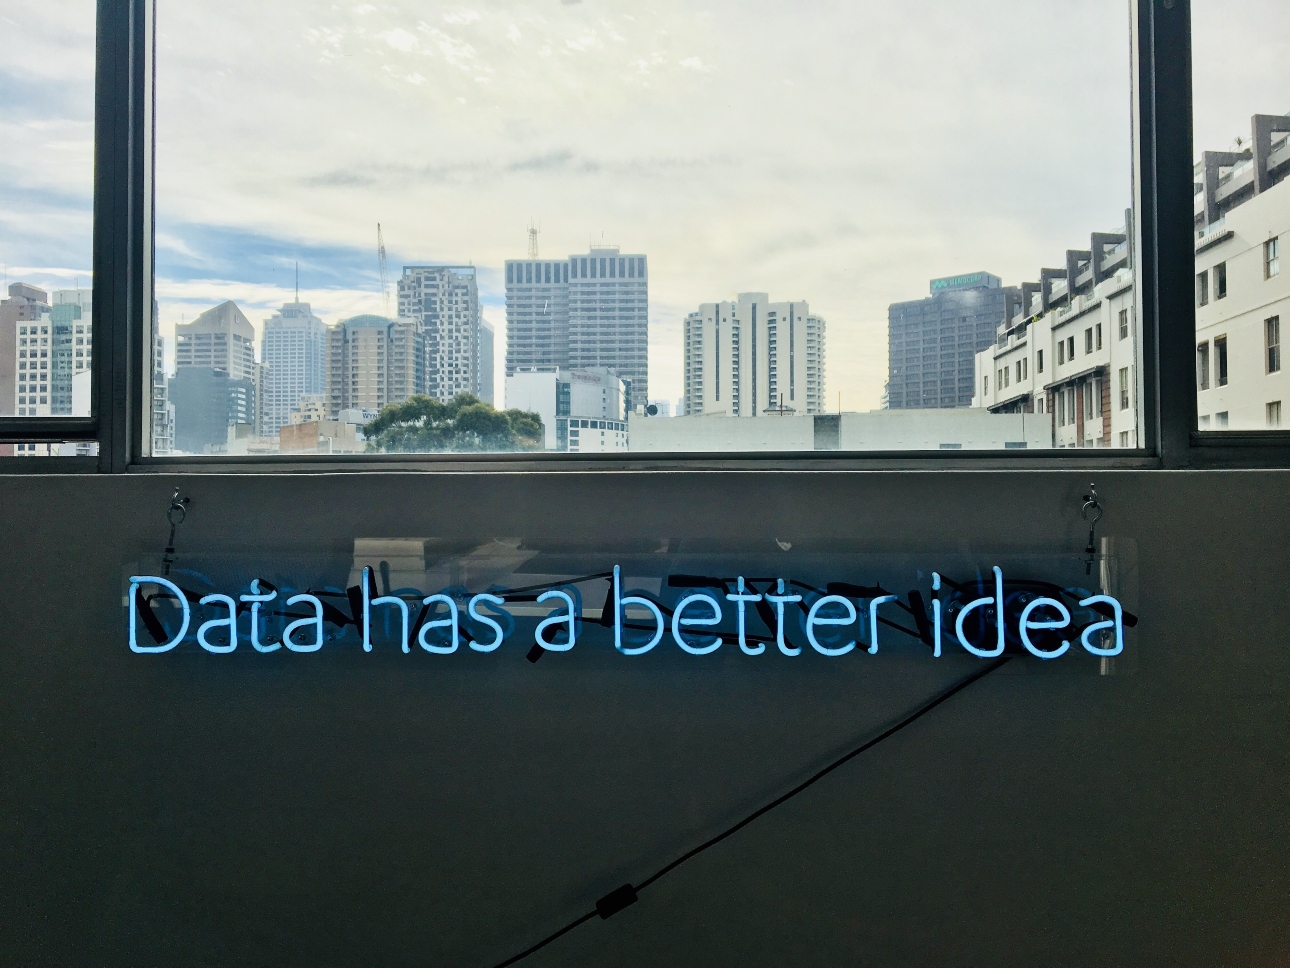 data-has-a-better-idea-sign-below-city-skyline